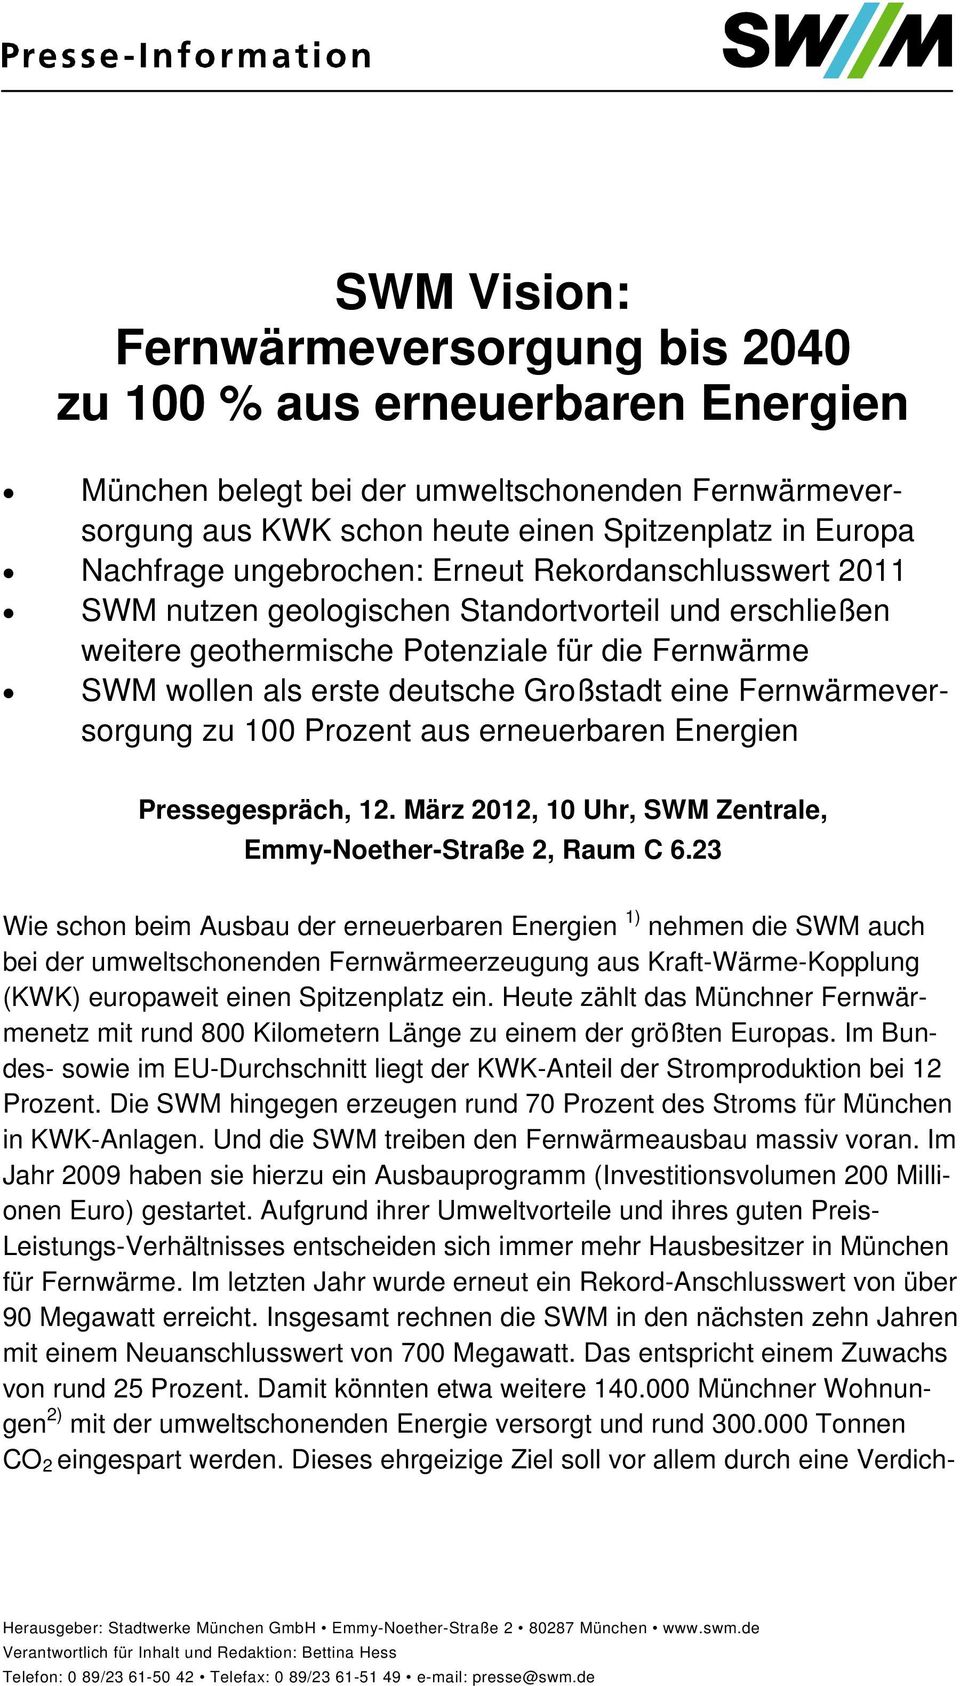 Fernwärmeversorgung zu 100 Prozent aus erneuerbaren Energien Pressegespräch, 12. März 2012, 10 Uhr, SWM Zentrale, Emmy-Noether-Straße 2, Raum C 6.